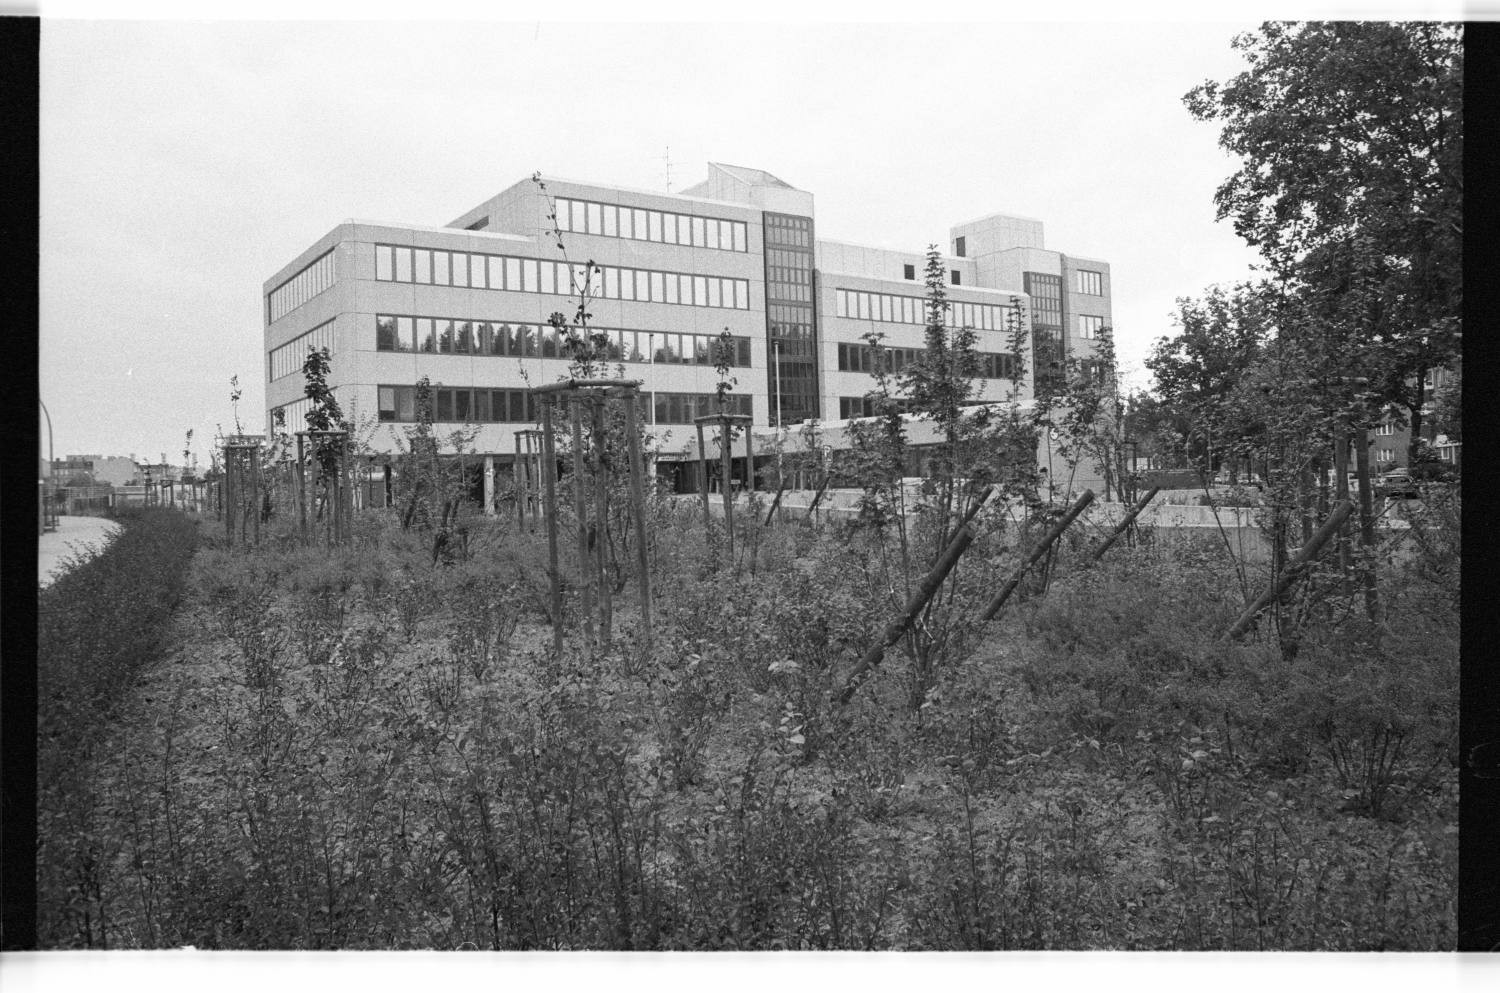 Kleinbildnegative: Gesundheitsamt, Wexstraße, 1980 (Museen Tempelhof-Schöneberg/Jürgen Henschel RR-F)